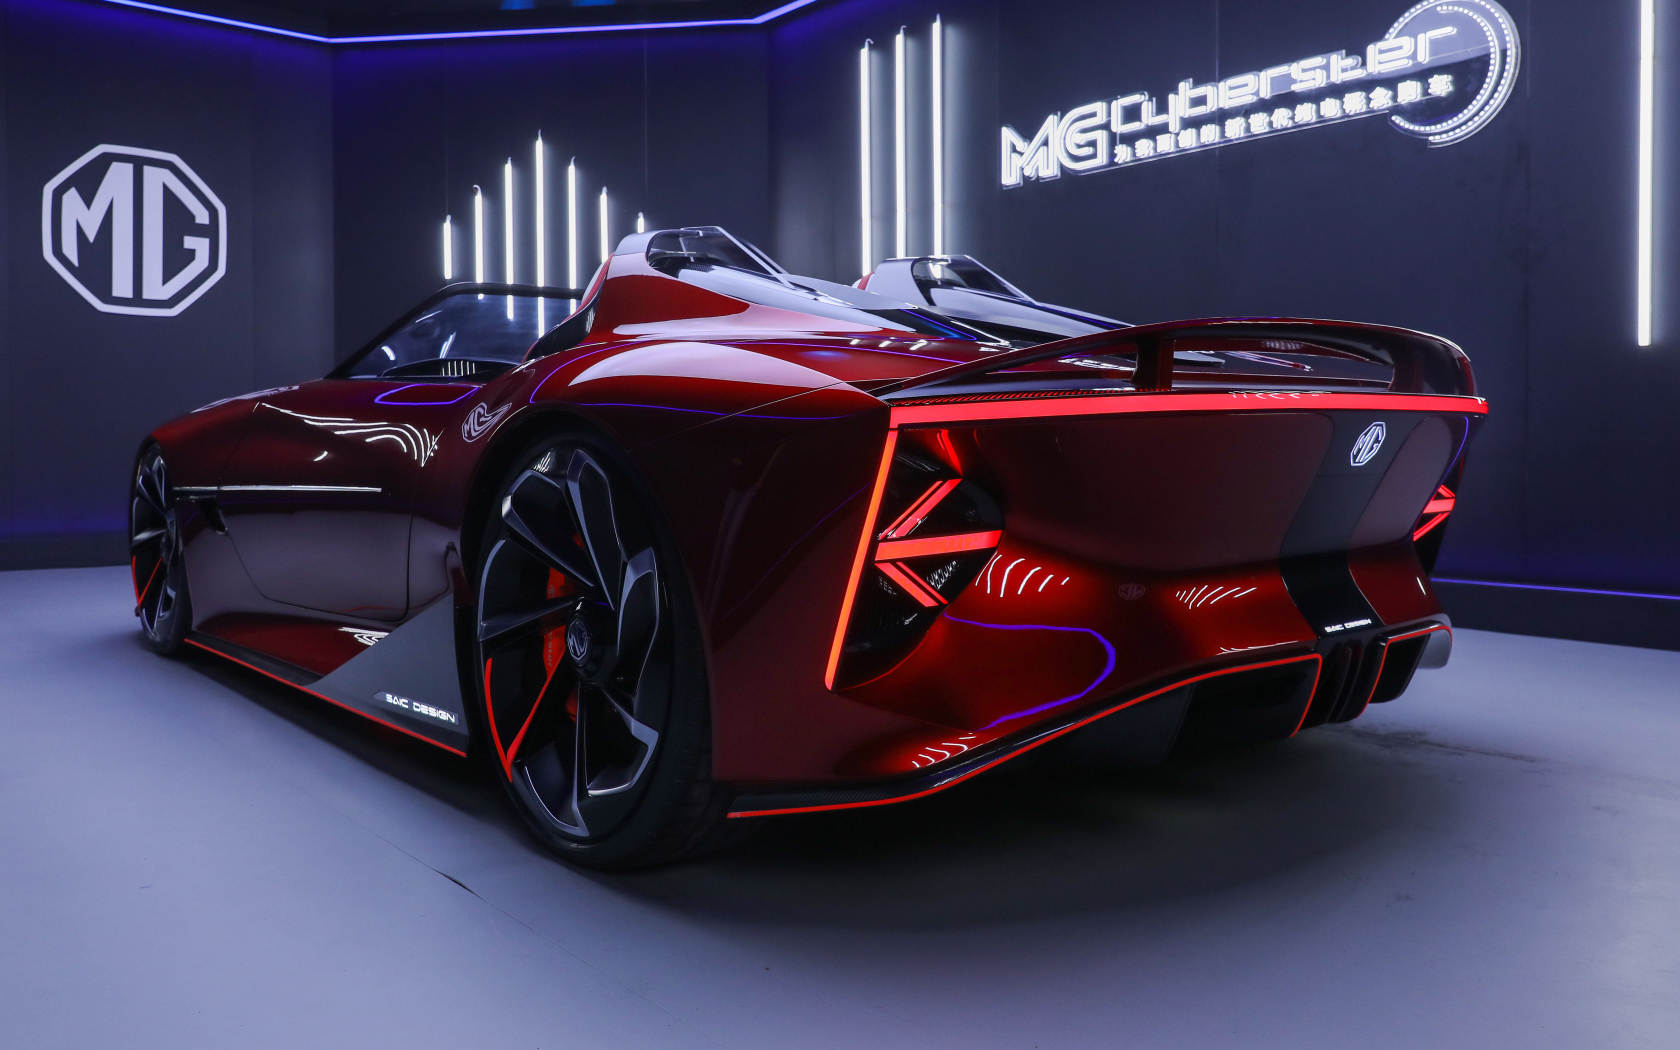 Красный новый автомобиль  MG Cyberster Concept 2021 года